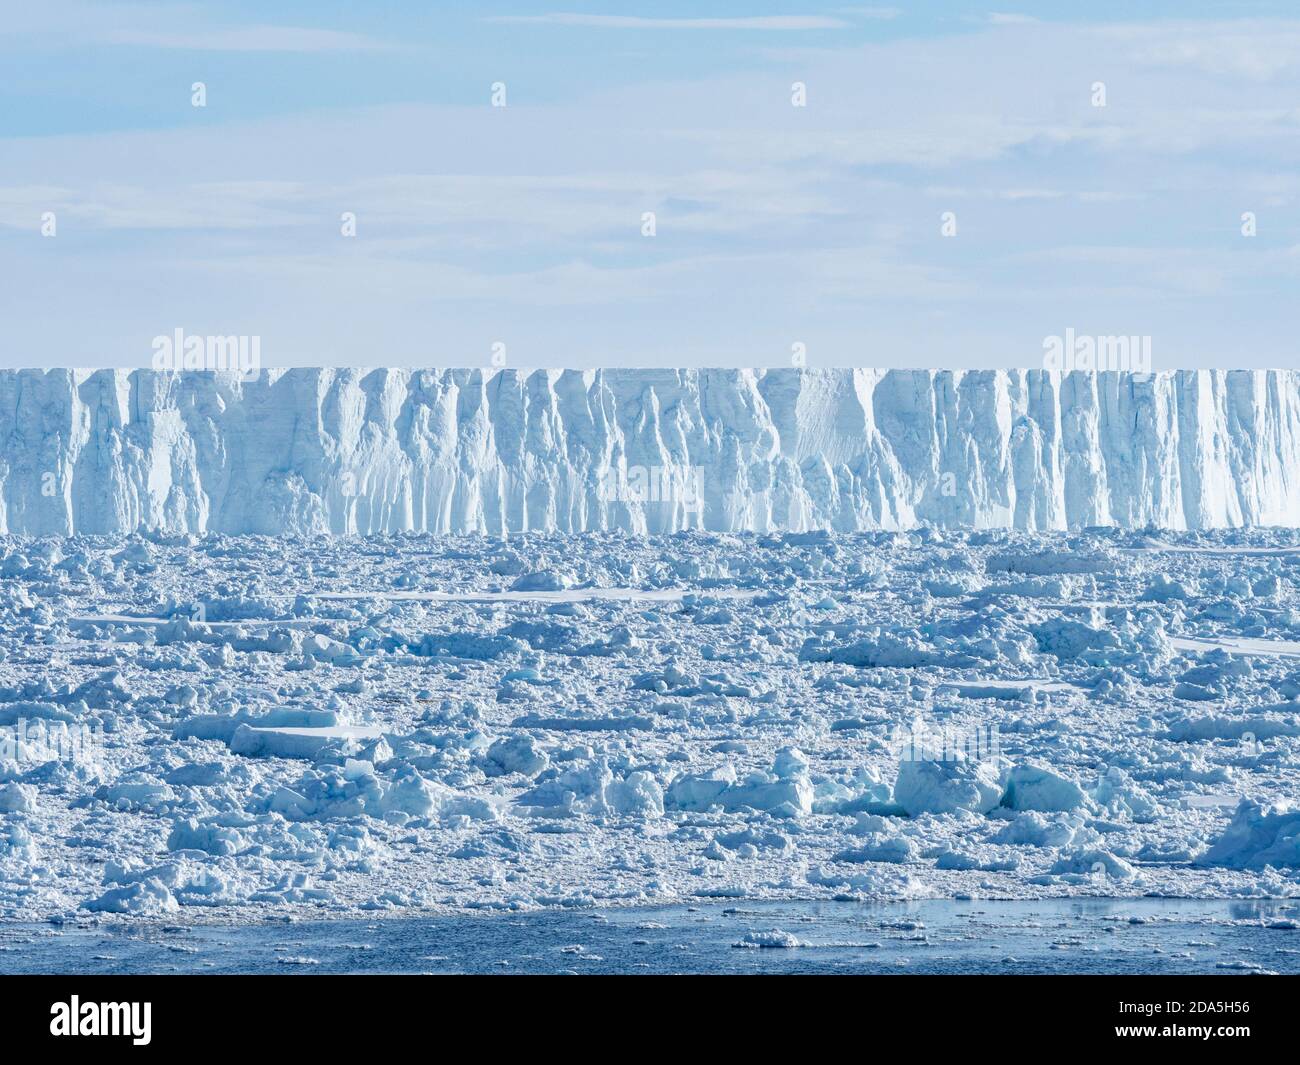 Glace de mer, icebergs tabulaires et glace à brises dans le golfe d'Erebus et de Terror, dans la mer de Weddell, en Antarctique. Banque D'Images